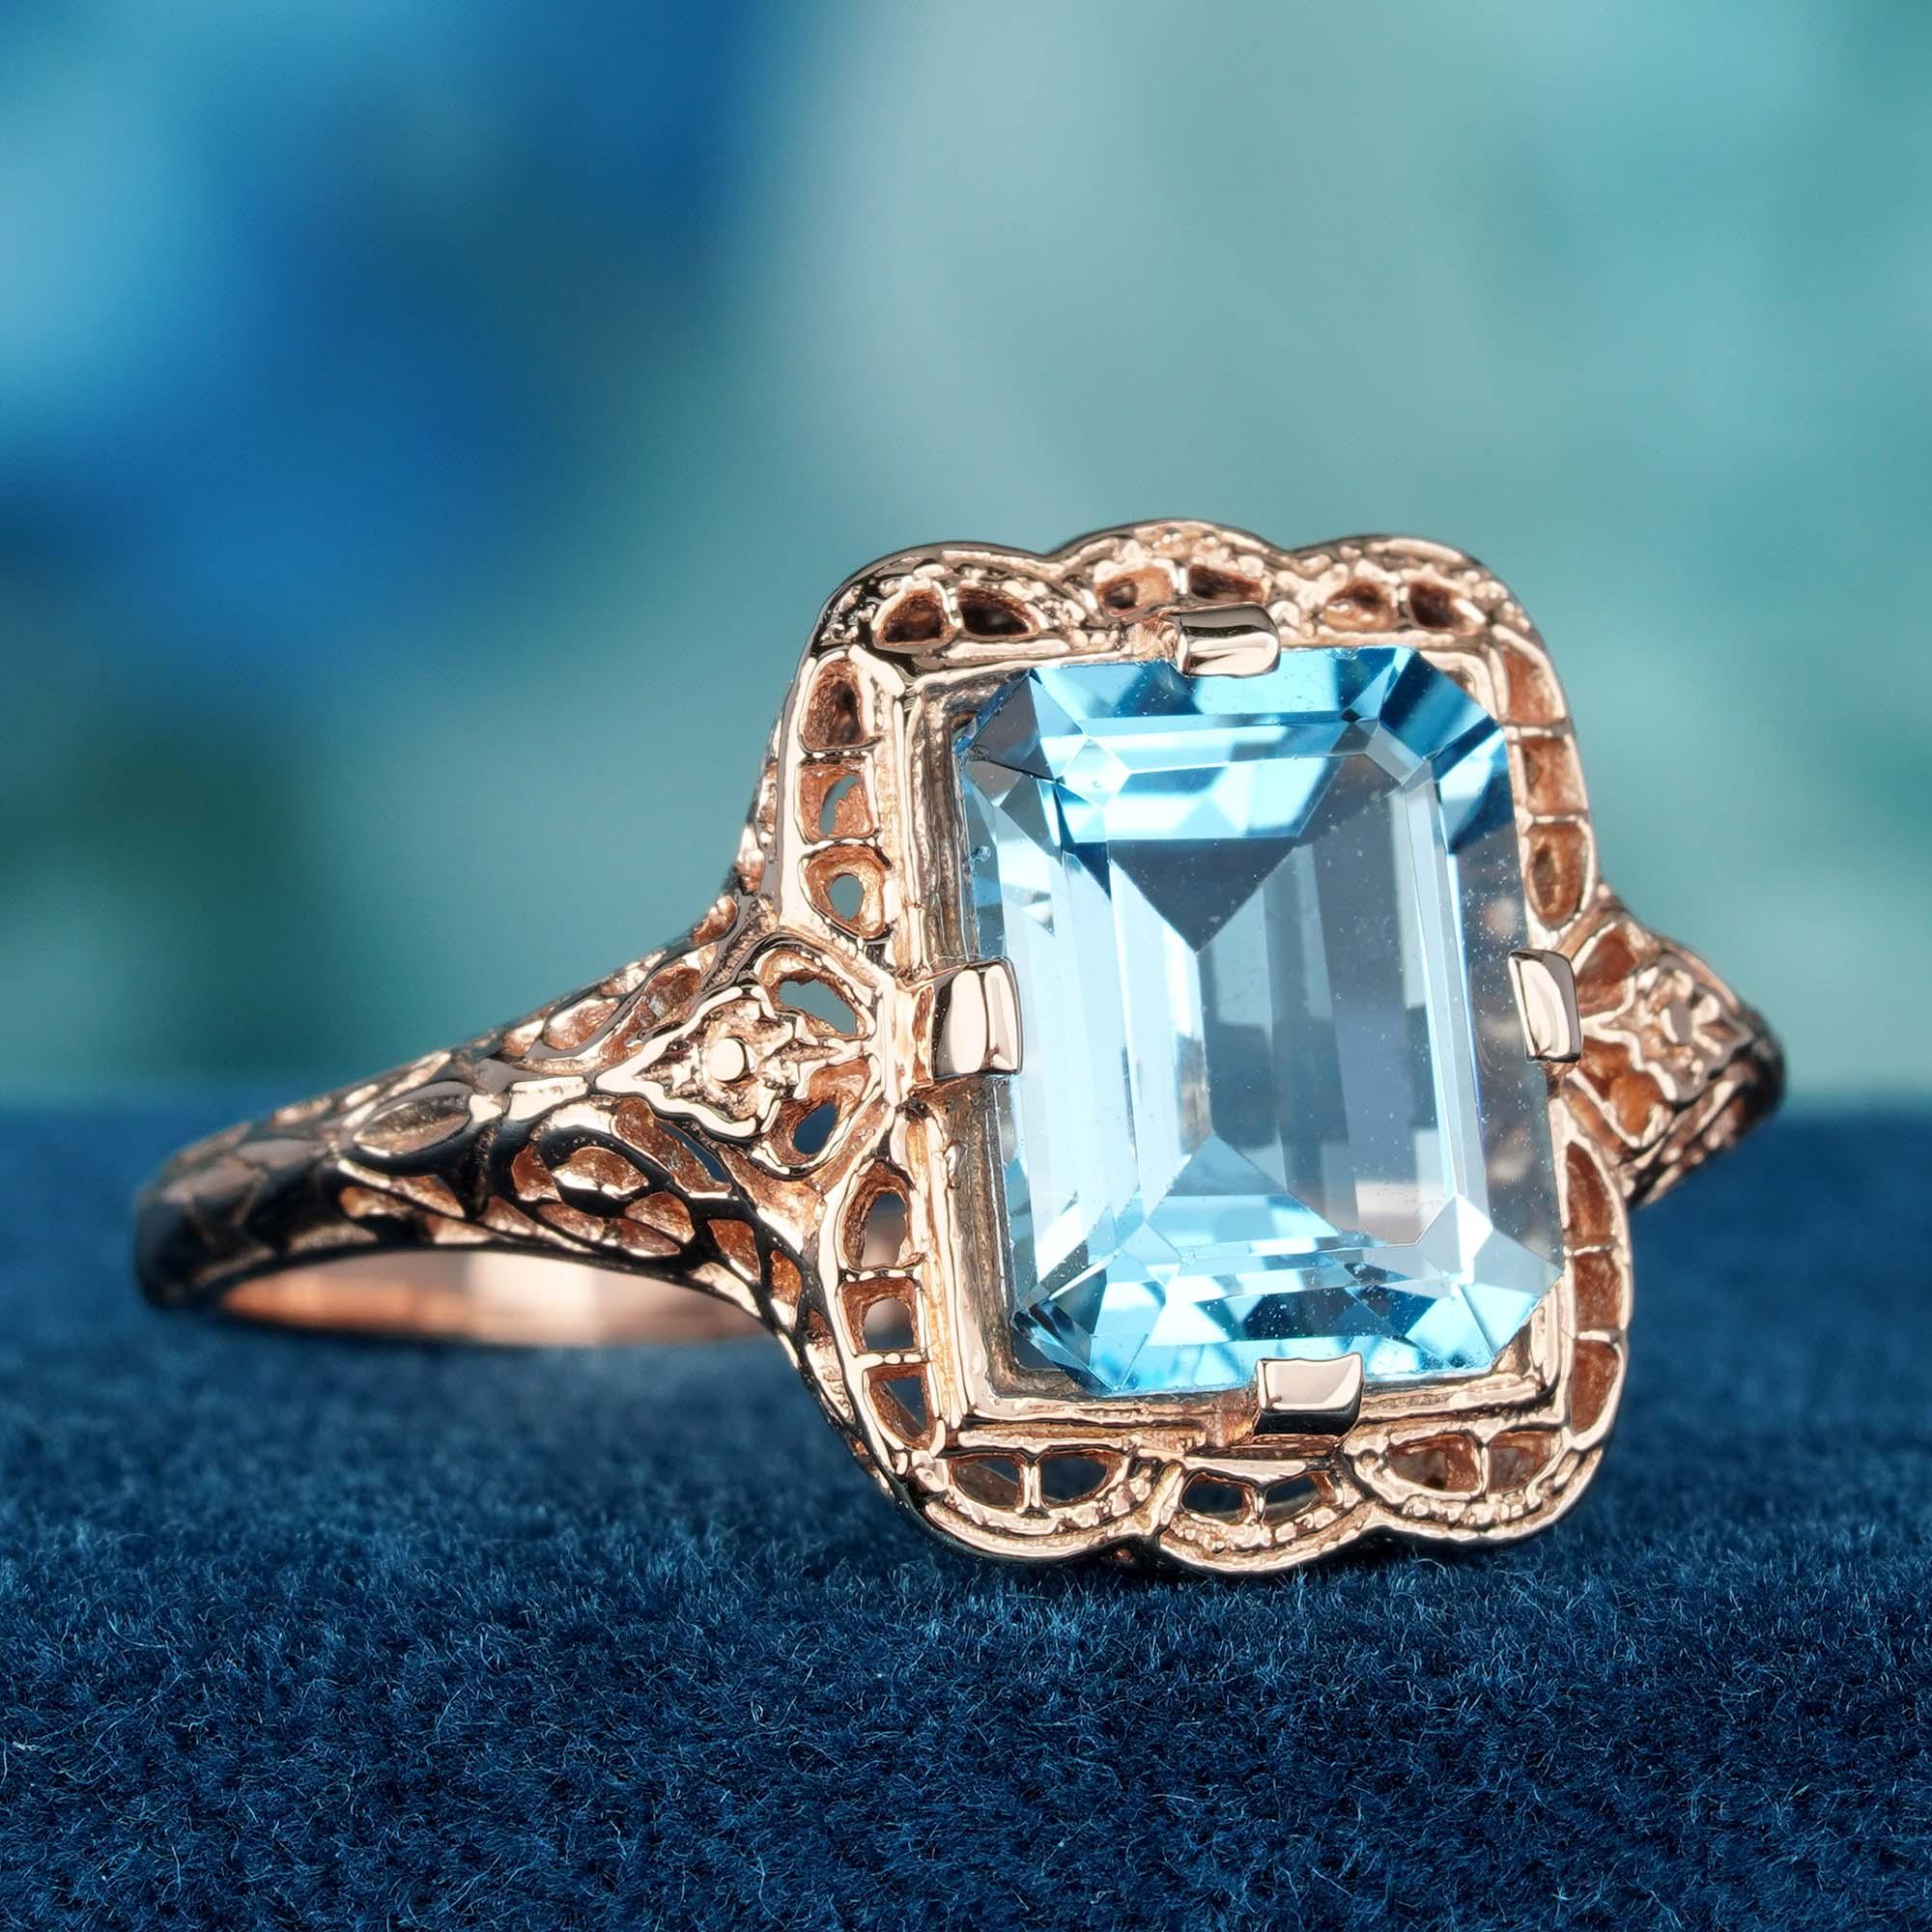 Unser exquisiter Ring ist aus massivem Roségold gefertigt und bietet sowohl Eleganz als auch Haltbarkeit. Mit einem fesselnden natürlichen Blautopas als Hauptstein, der beeindruckende 4,50 Karat im faszinierenden Smaragdschliff aufweist, während die